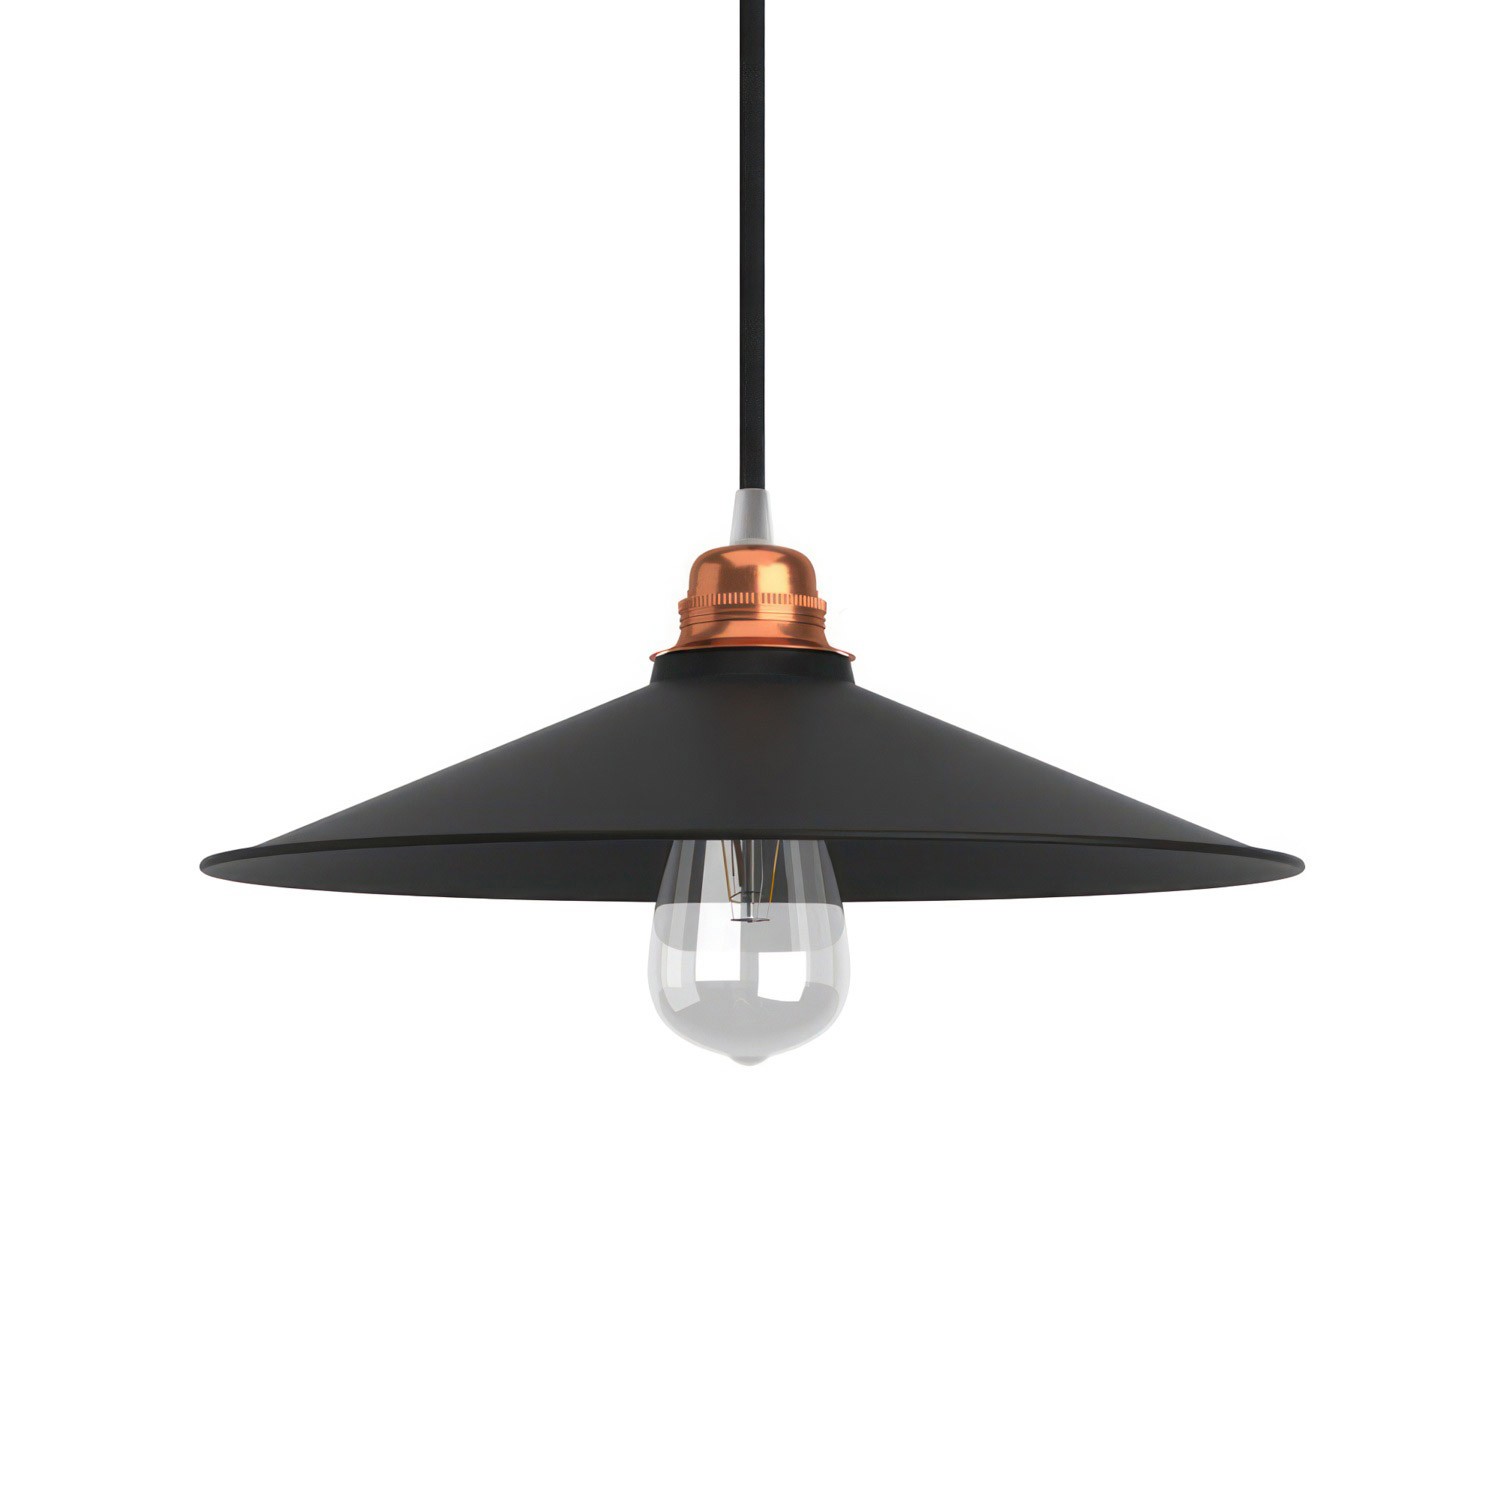 Lampenschirm Swing aus lackiertem Metall mit E27 Anschluss